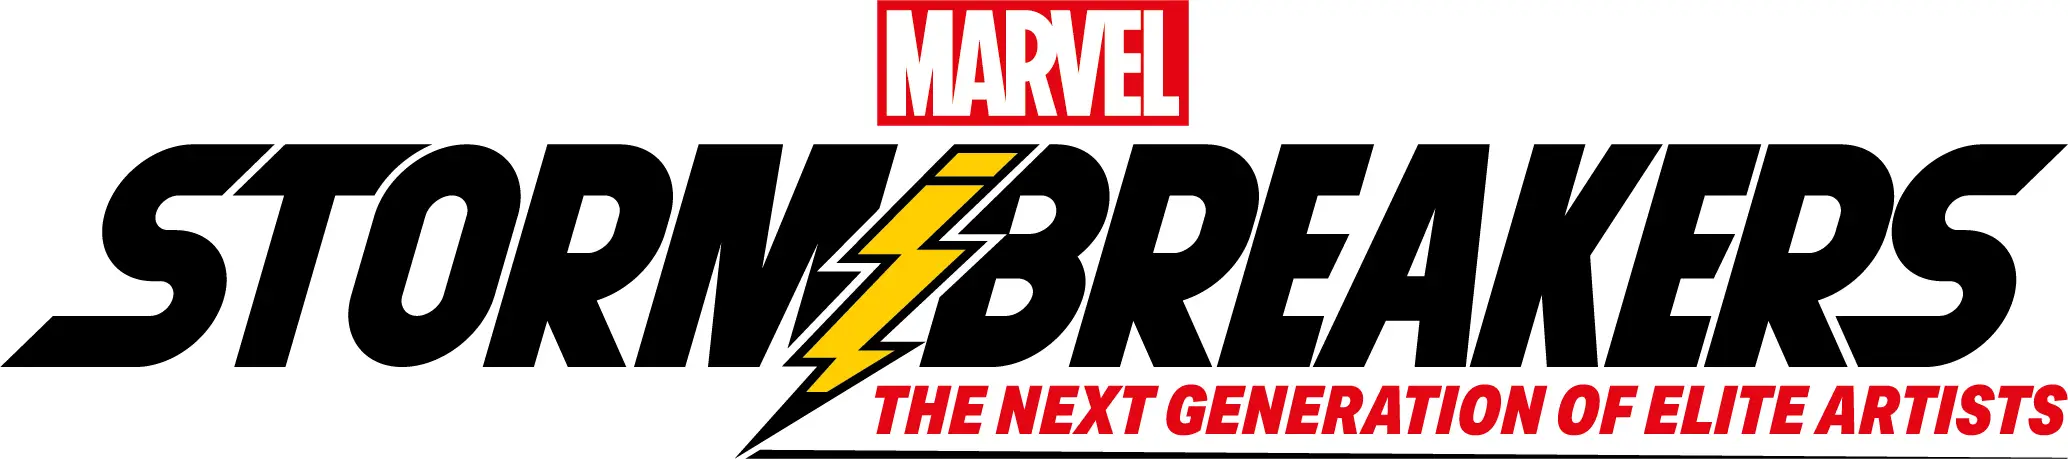 Marvel Comics launches Marvel's Stormbreakers